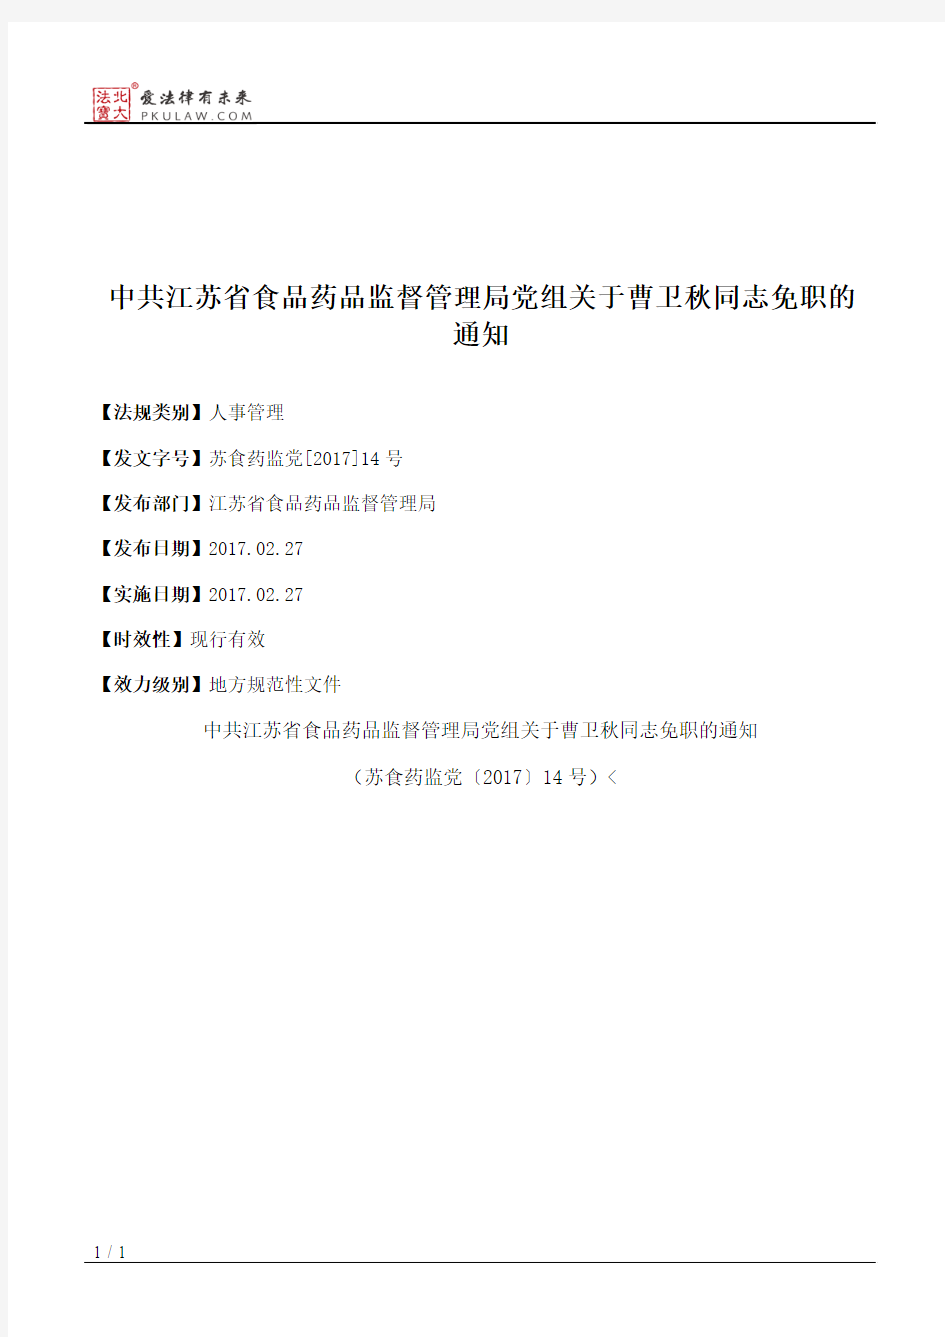 中共江苏省食品药品监督管理局党组关于曹卫秋同志免职的通知